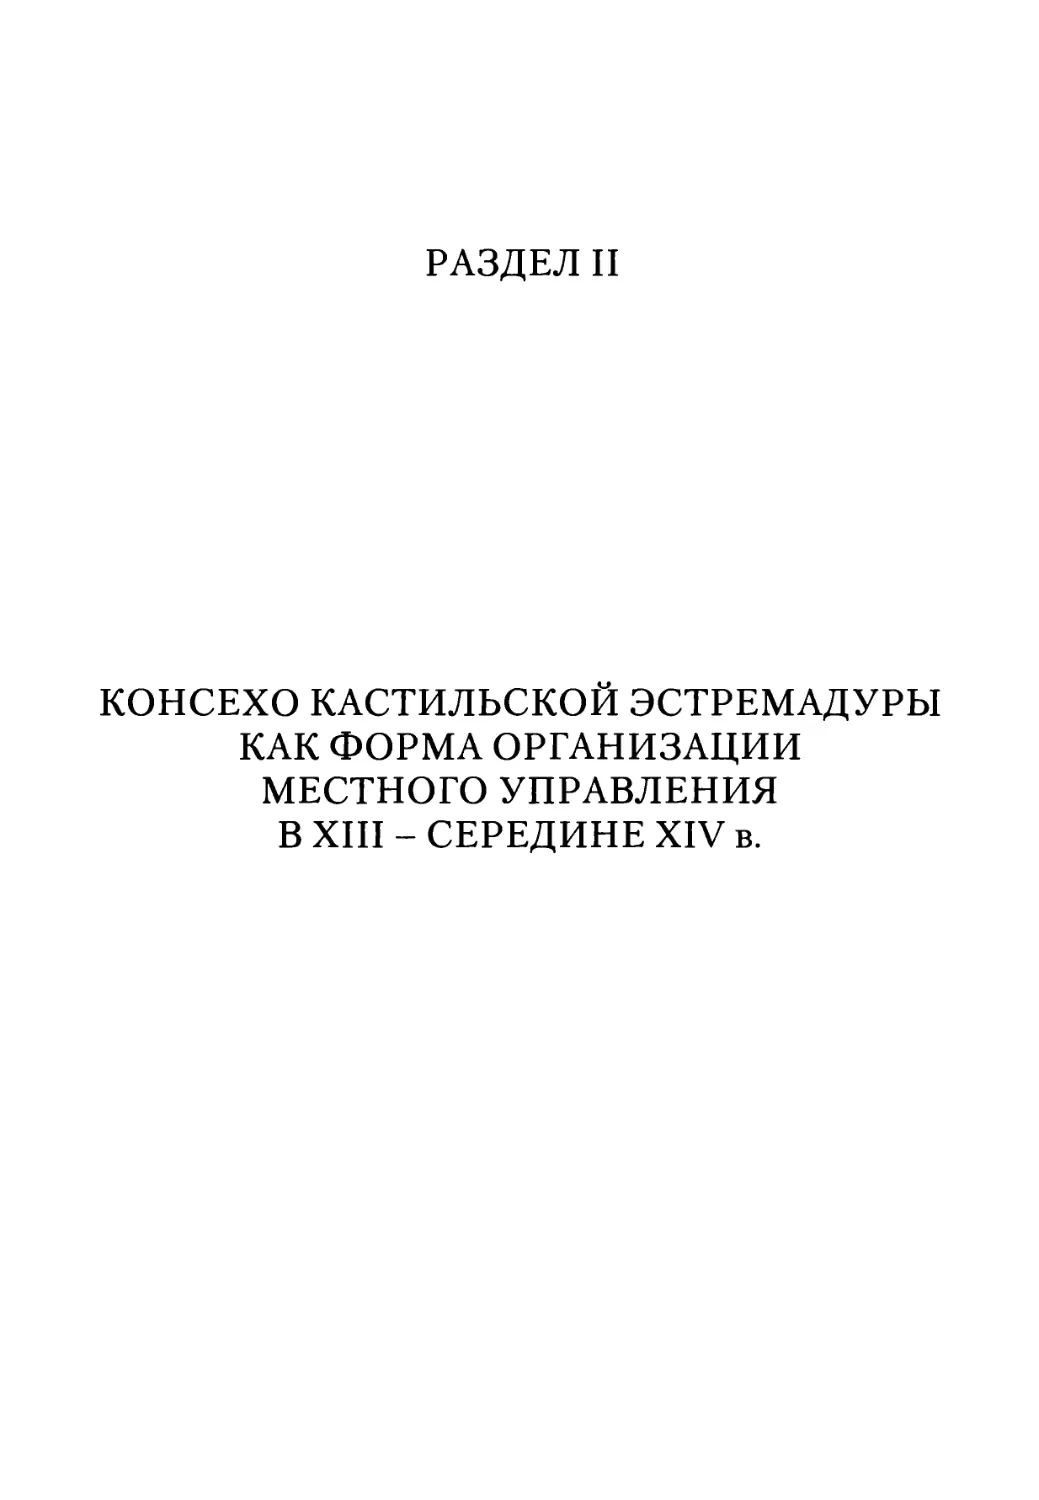 Раздел II. Консехо кастильской эстремадуры как форма организации местного управления в XIII - середине XIV в